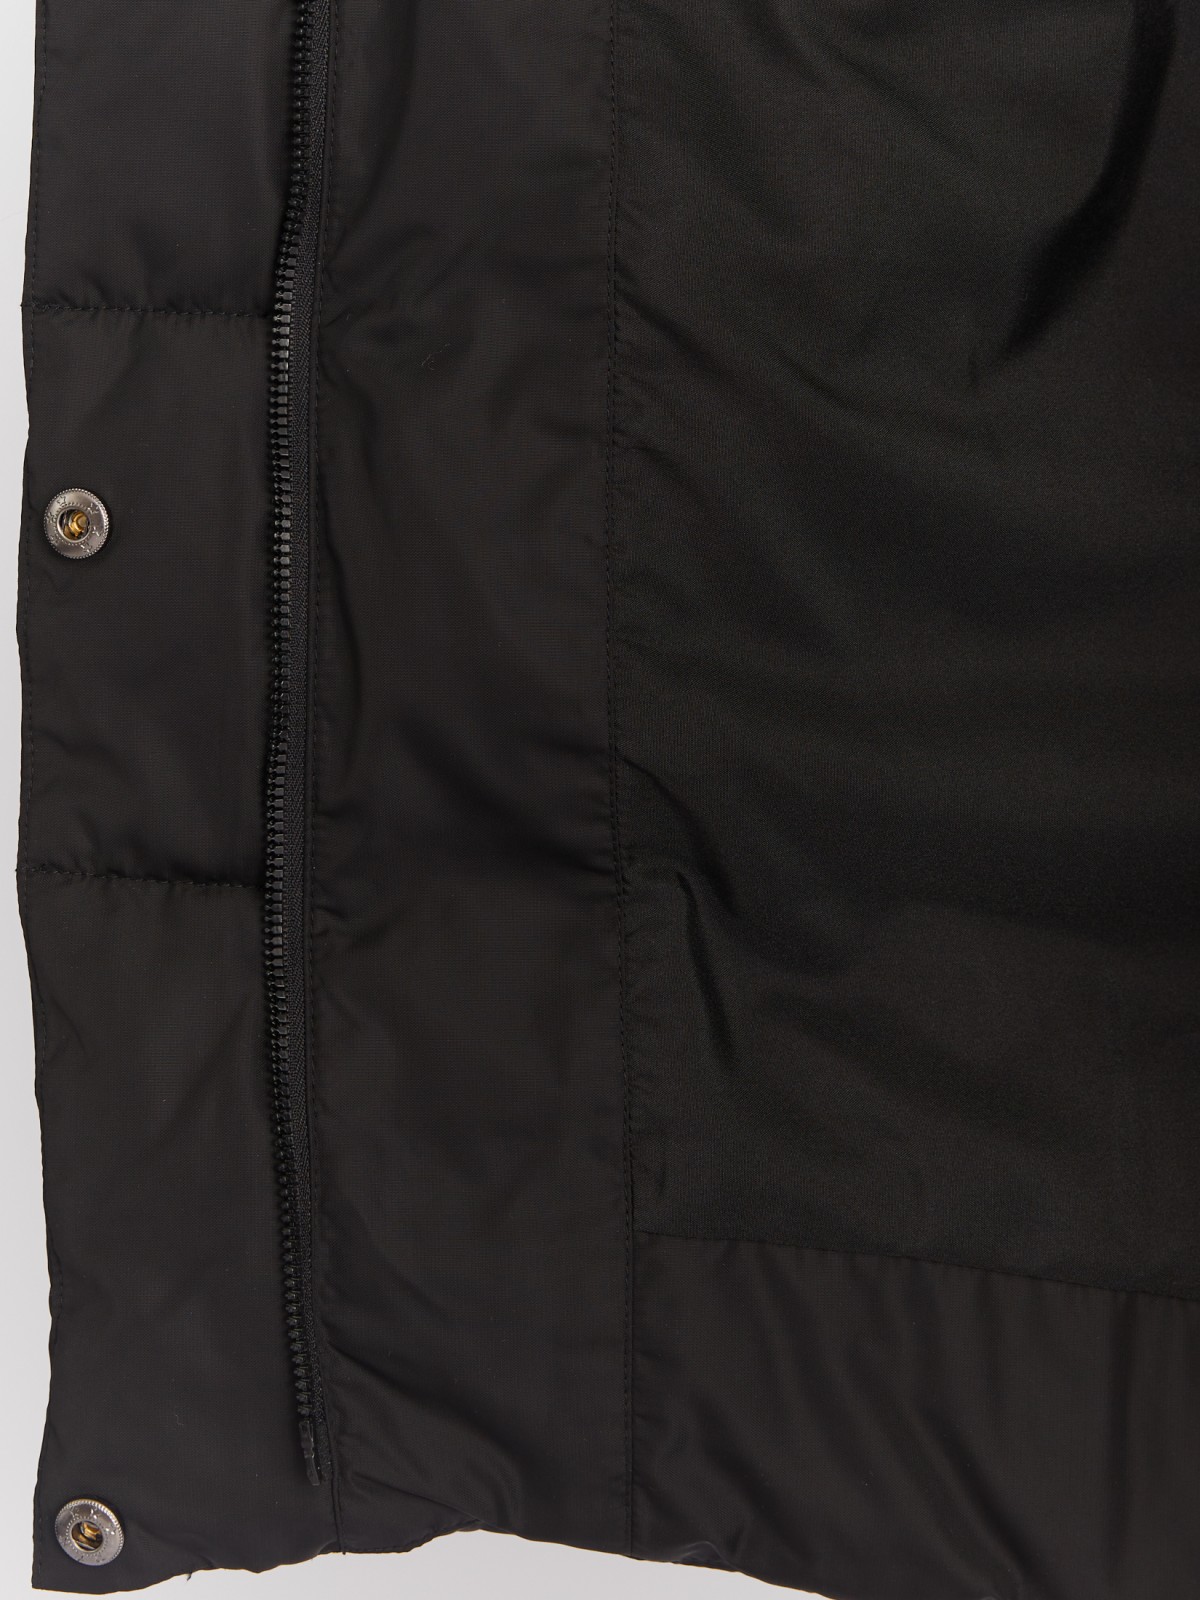 Тёплая куртка-пальто с капюшоном и боковыми шлицами на молниях zolla 022425212014, цвет черный, размер XS - фото 5